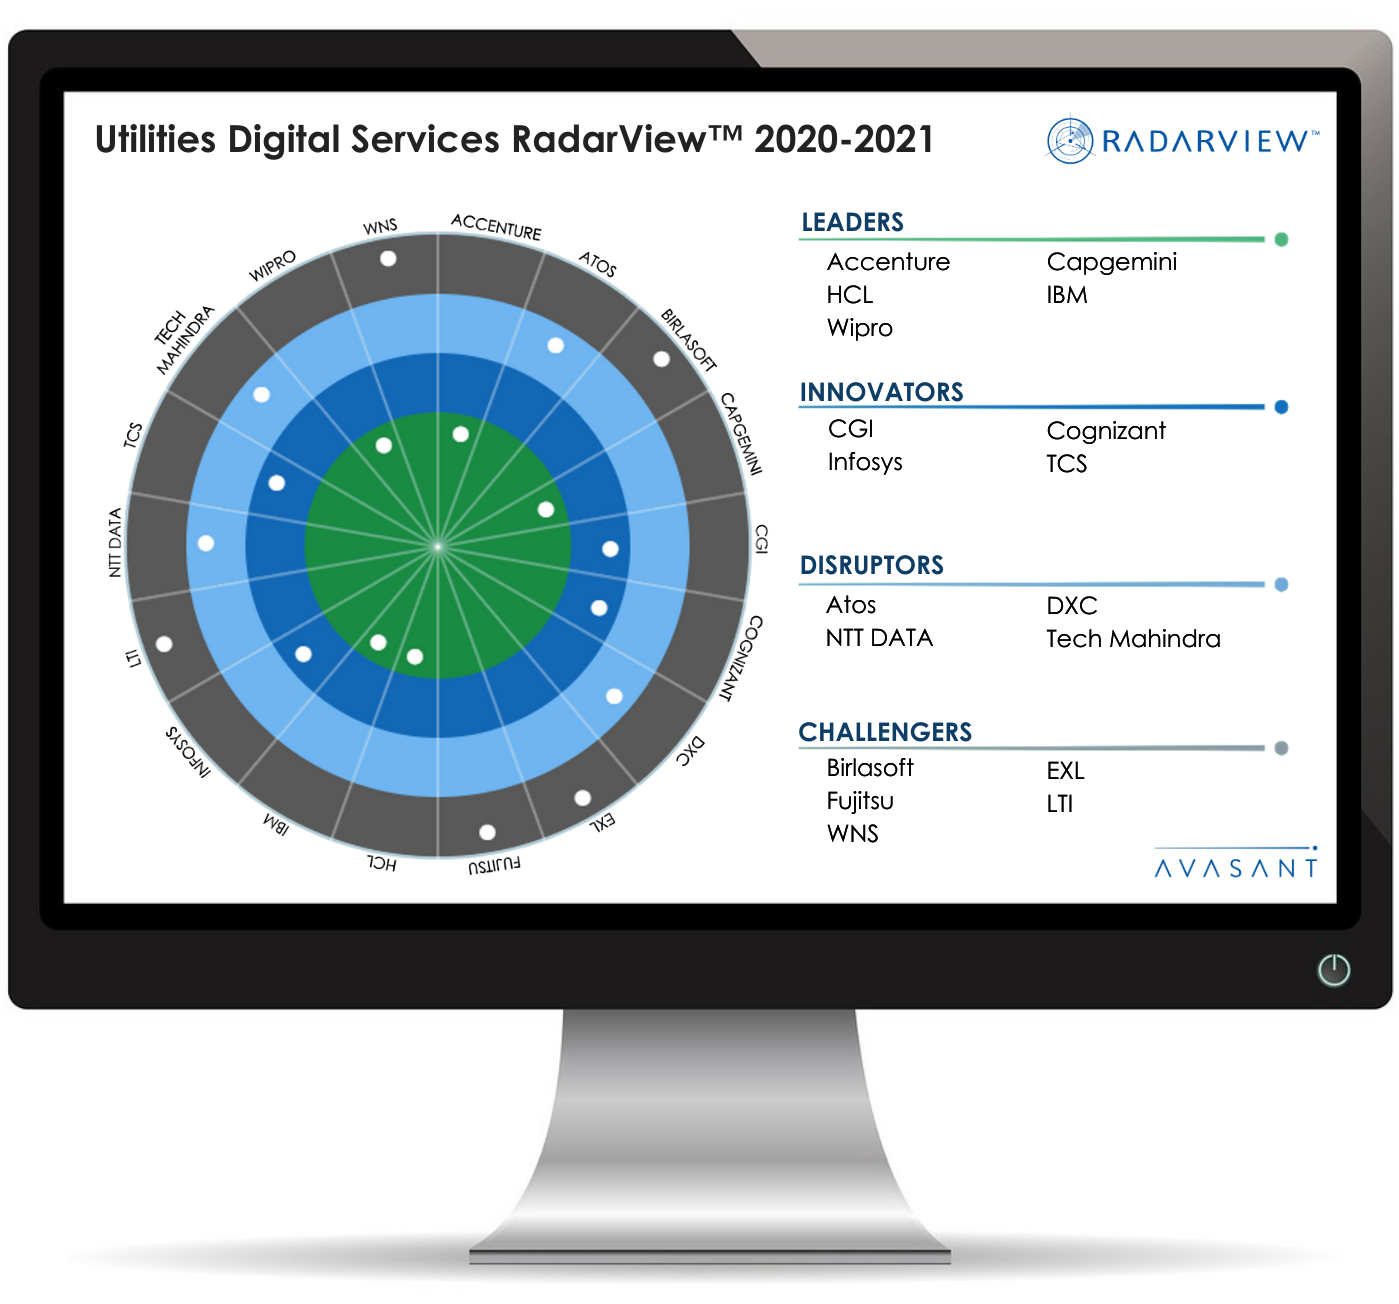 Utilities RV 1 - Utilities Digital Services RadarView™ 2020-2021 - Cognizant